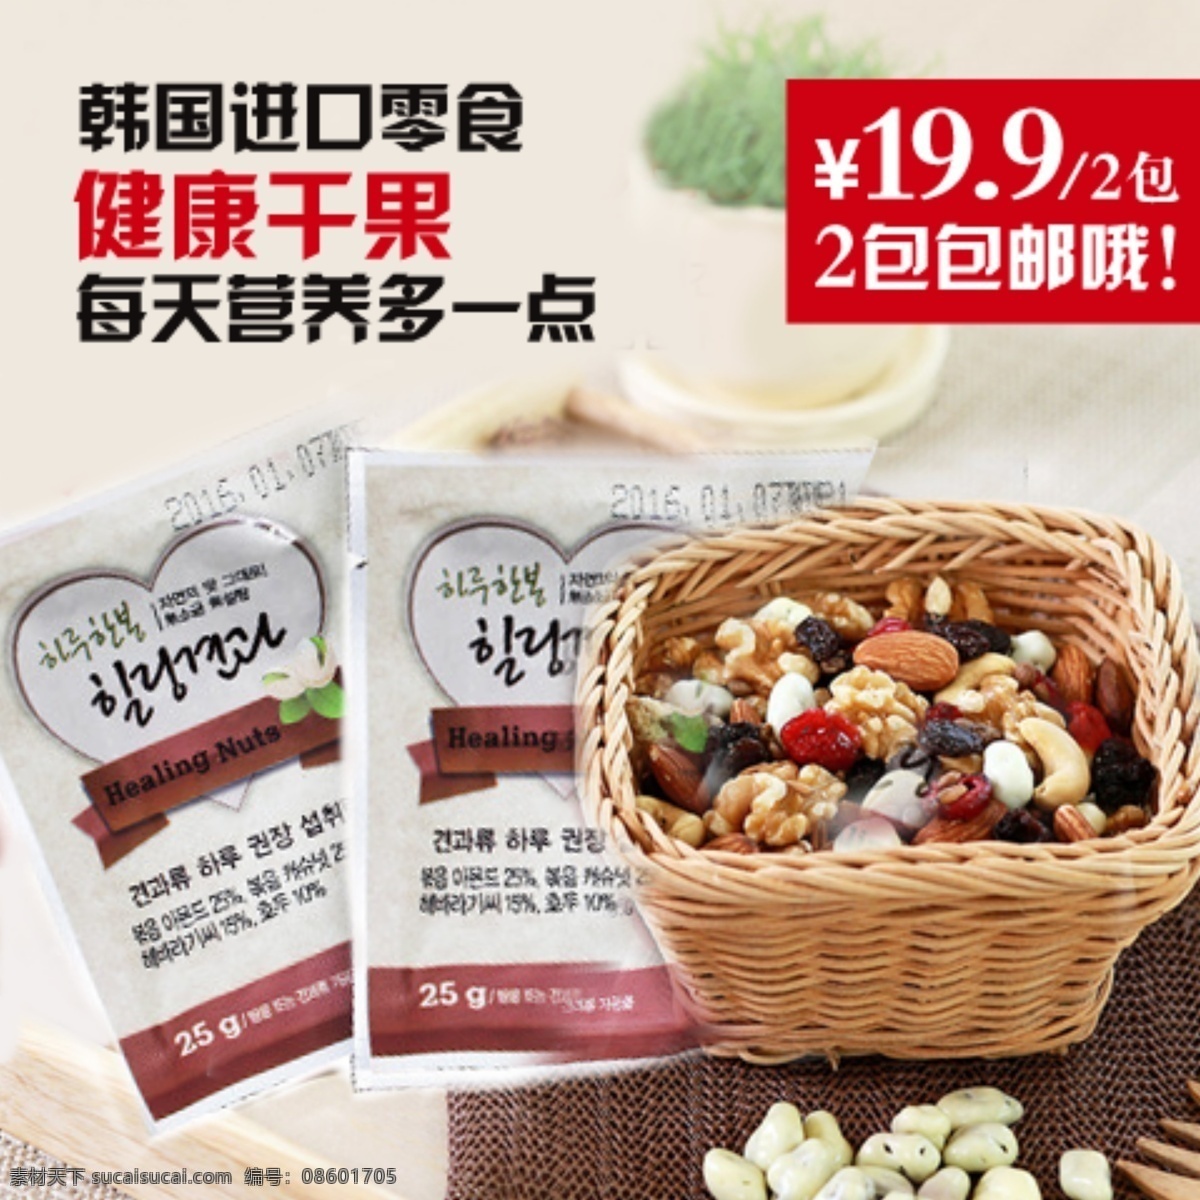 进口 坚果 健康 干果 主 图 海报 韩国坚果 进口干果 主图设计 零食海报 健康零食 白色